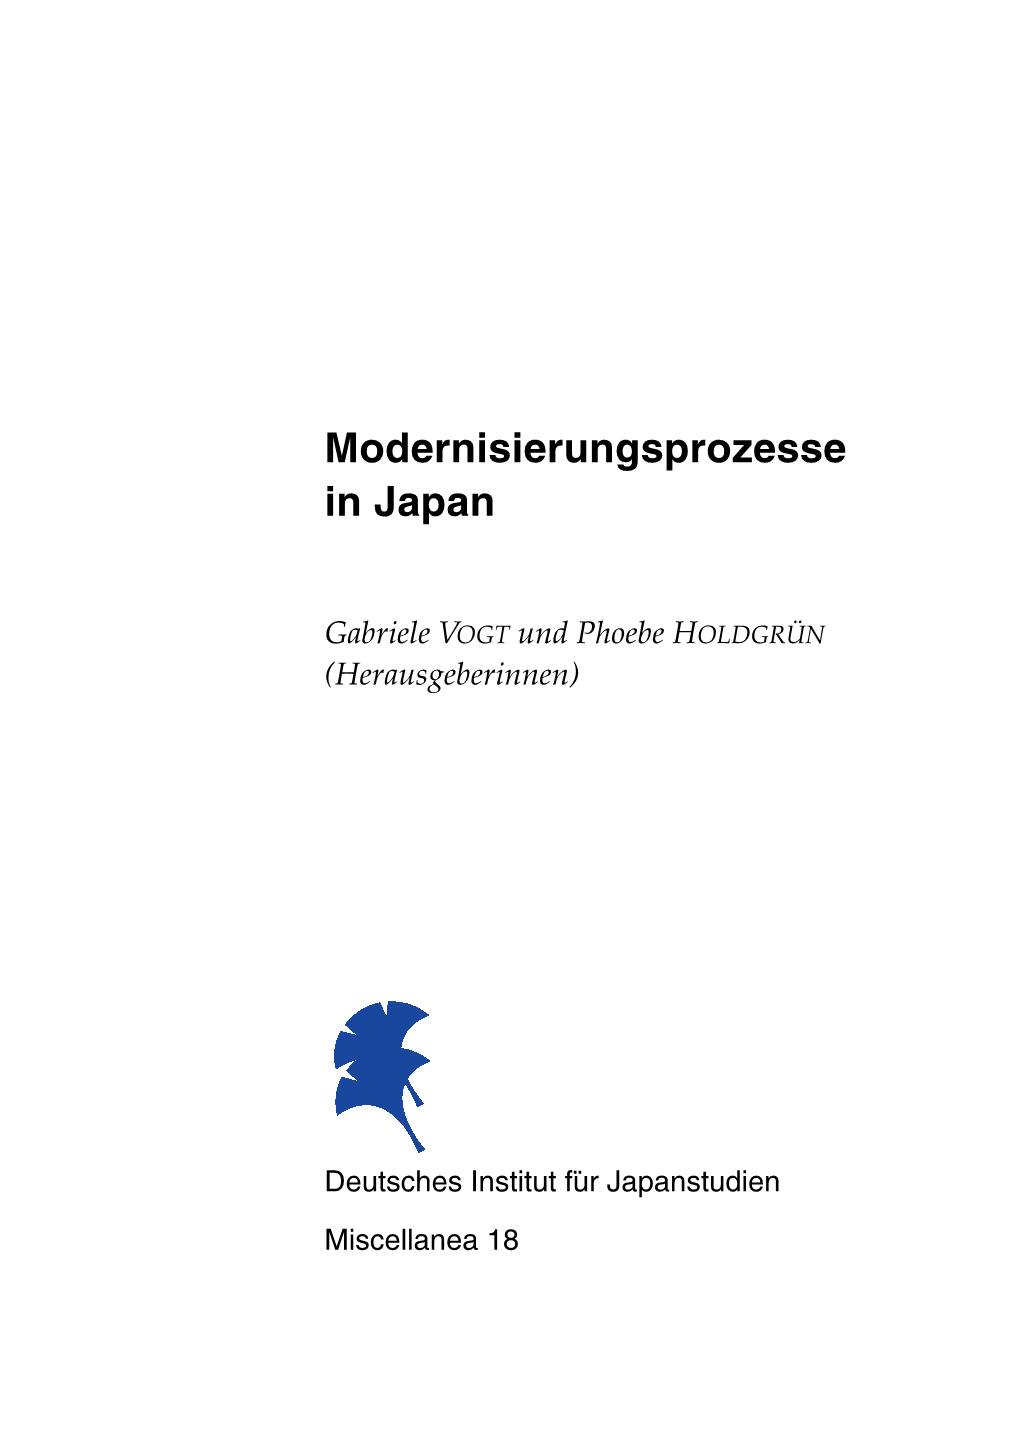 Modernisierungsprozesse in Japan